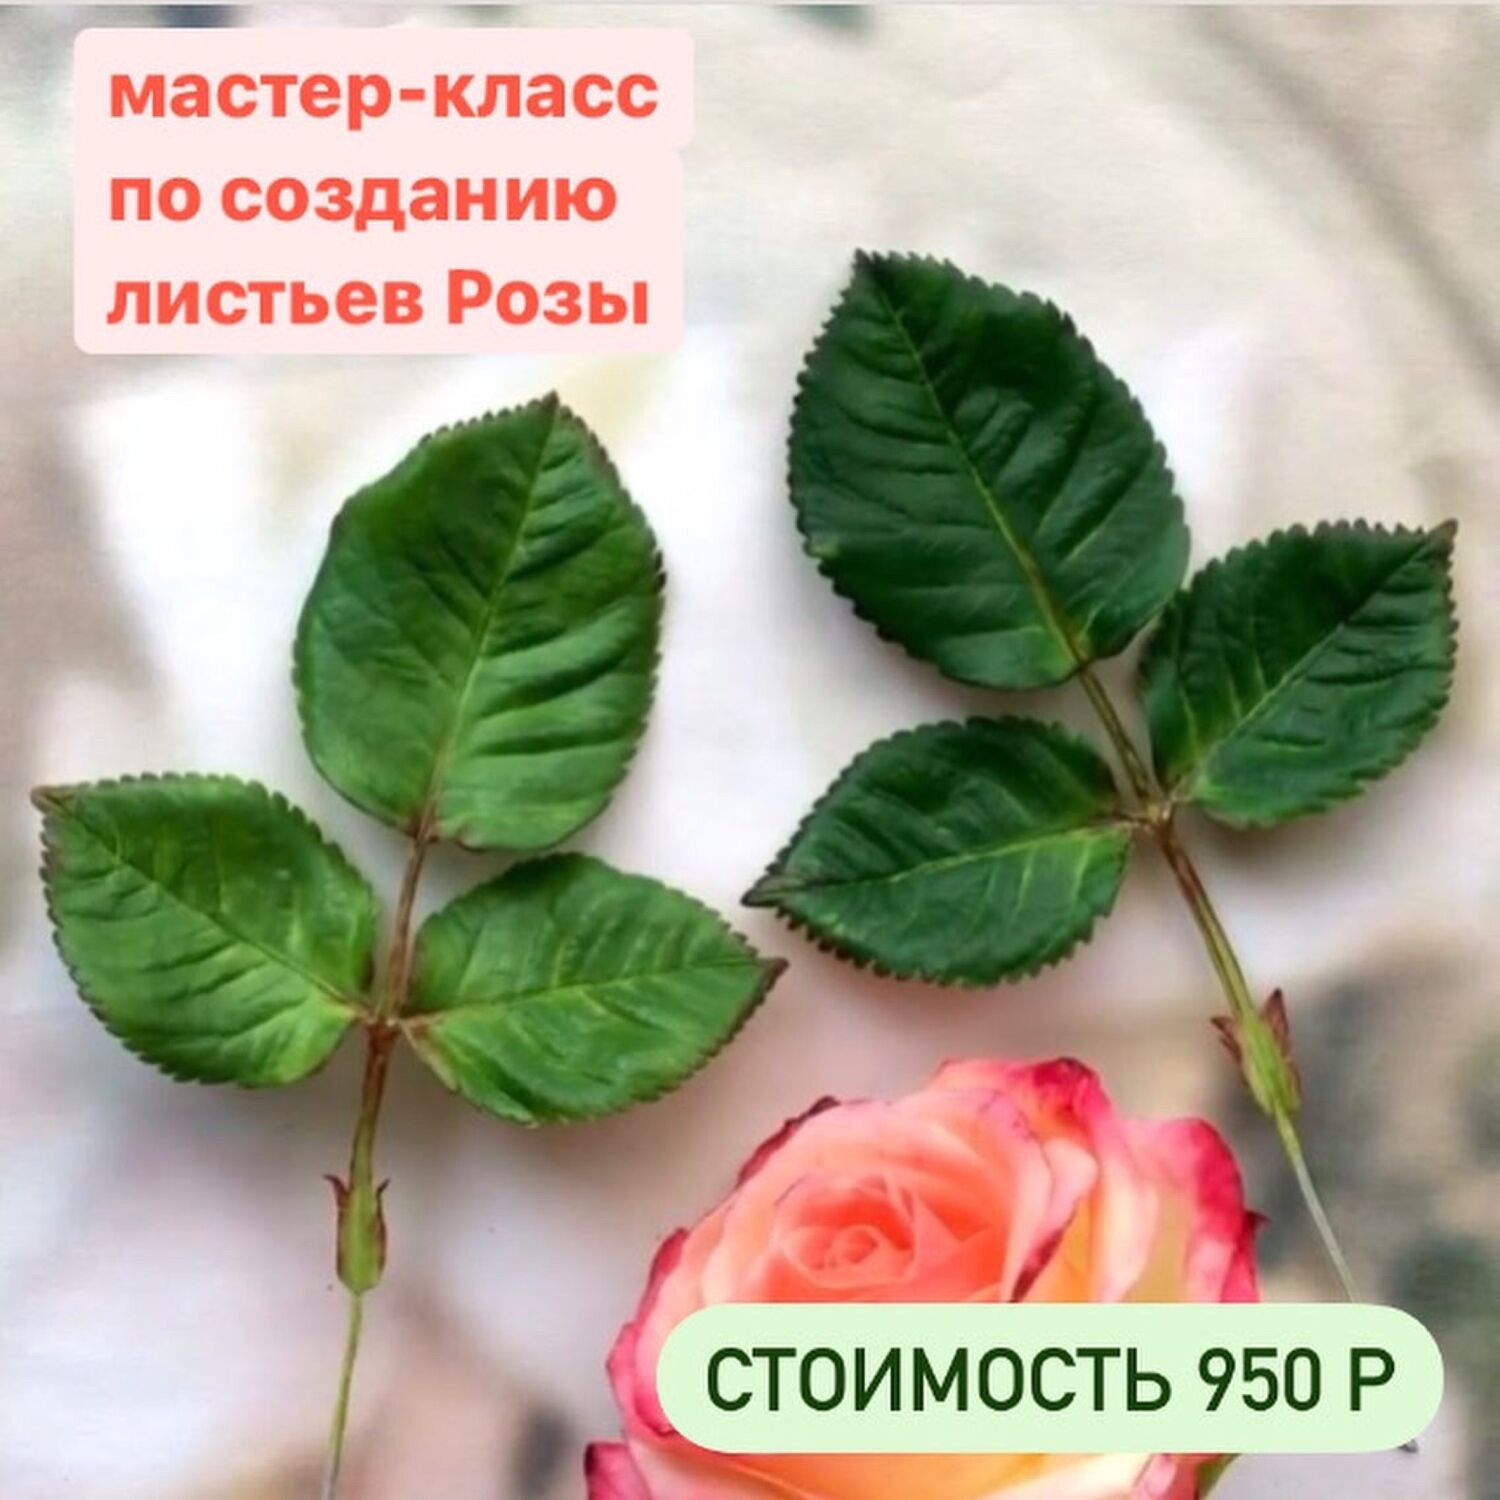 Как собрать букет из роз: мастер-класс по упаковке красивого букета из 3, 5, 9, 25 роз